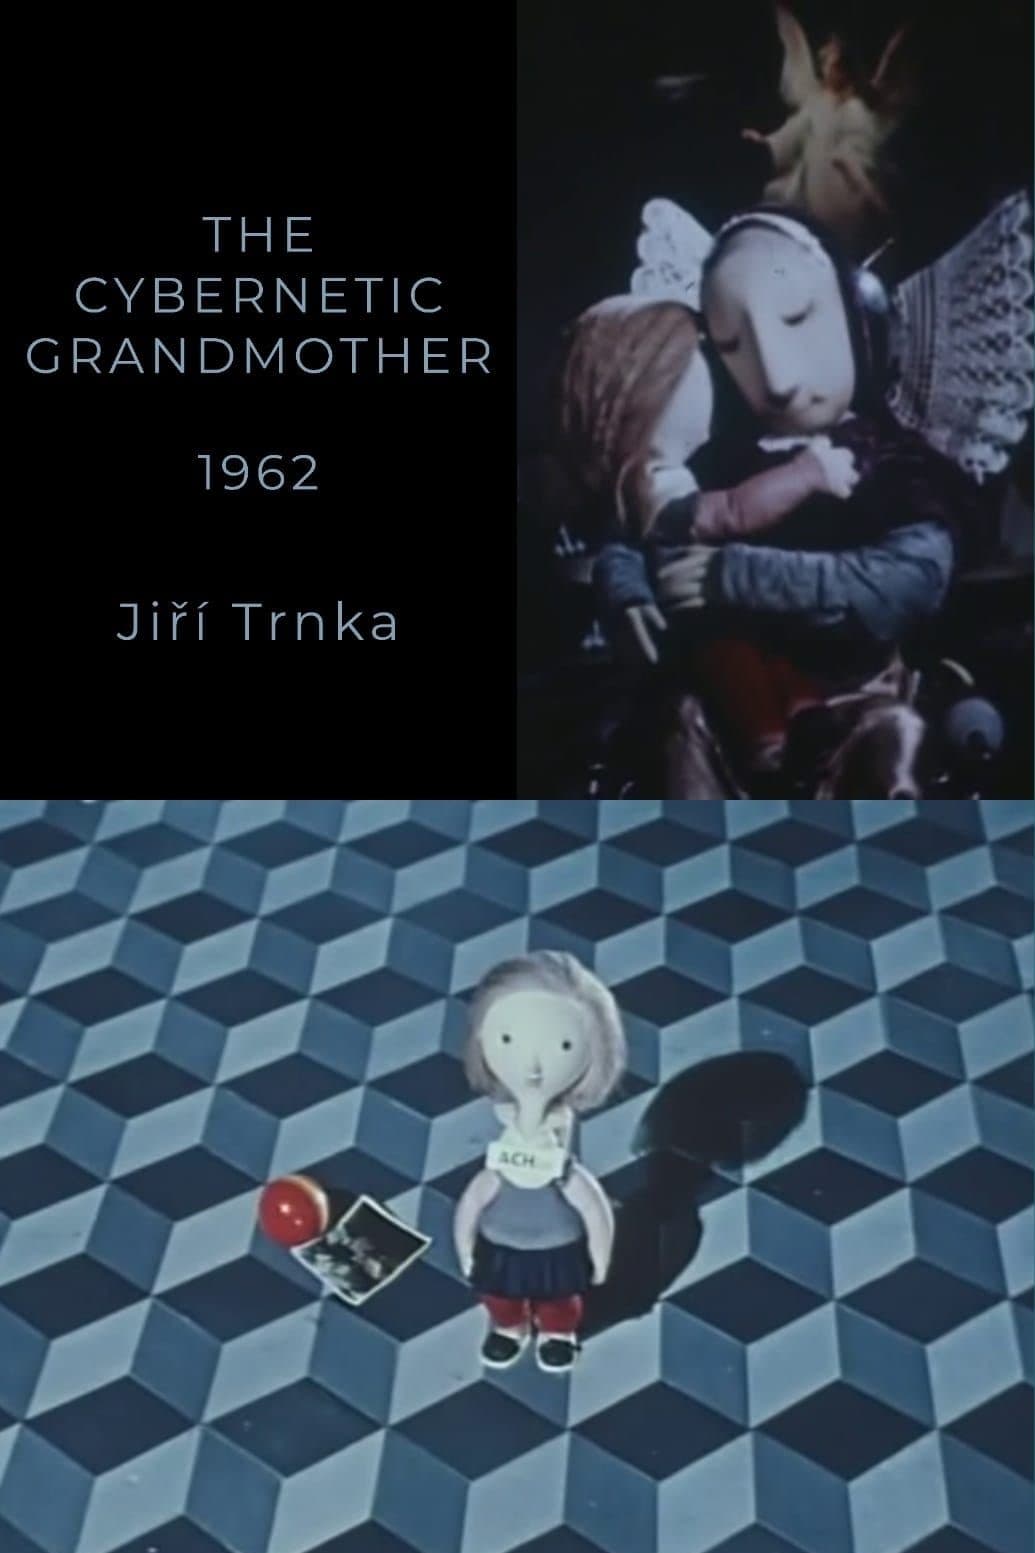 Cybernetic Grandma